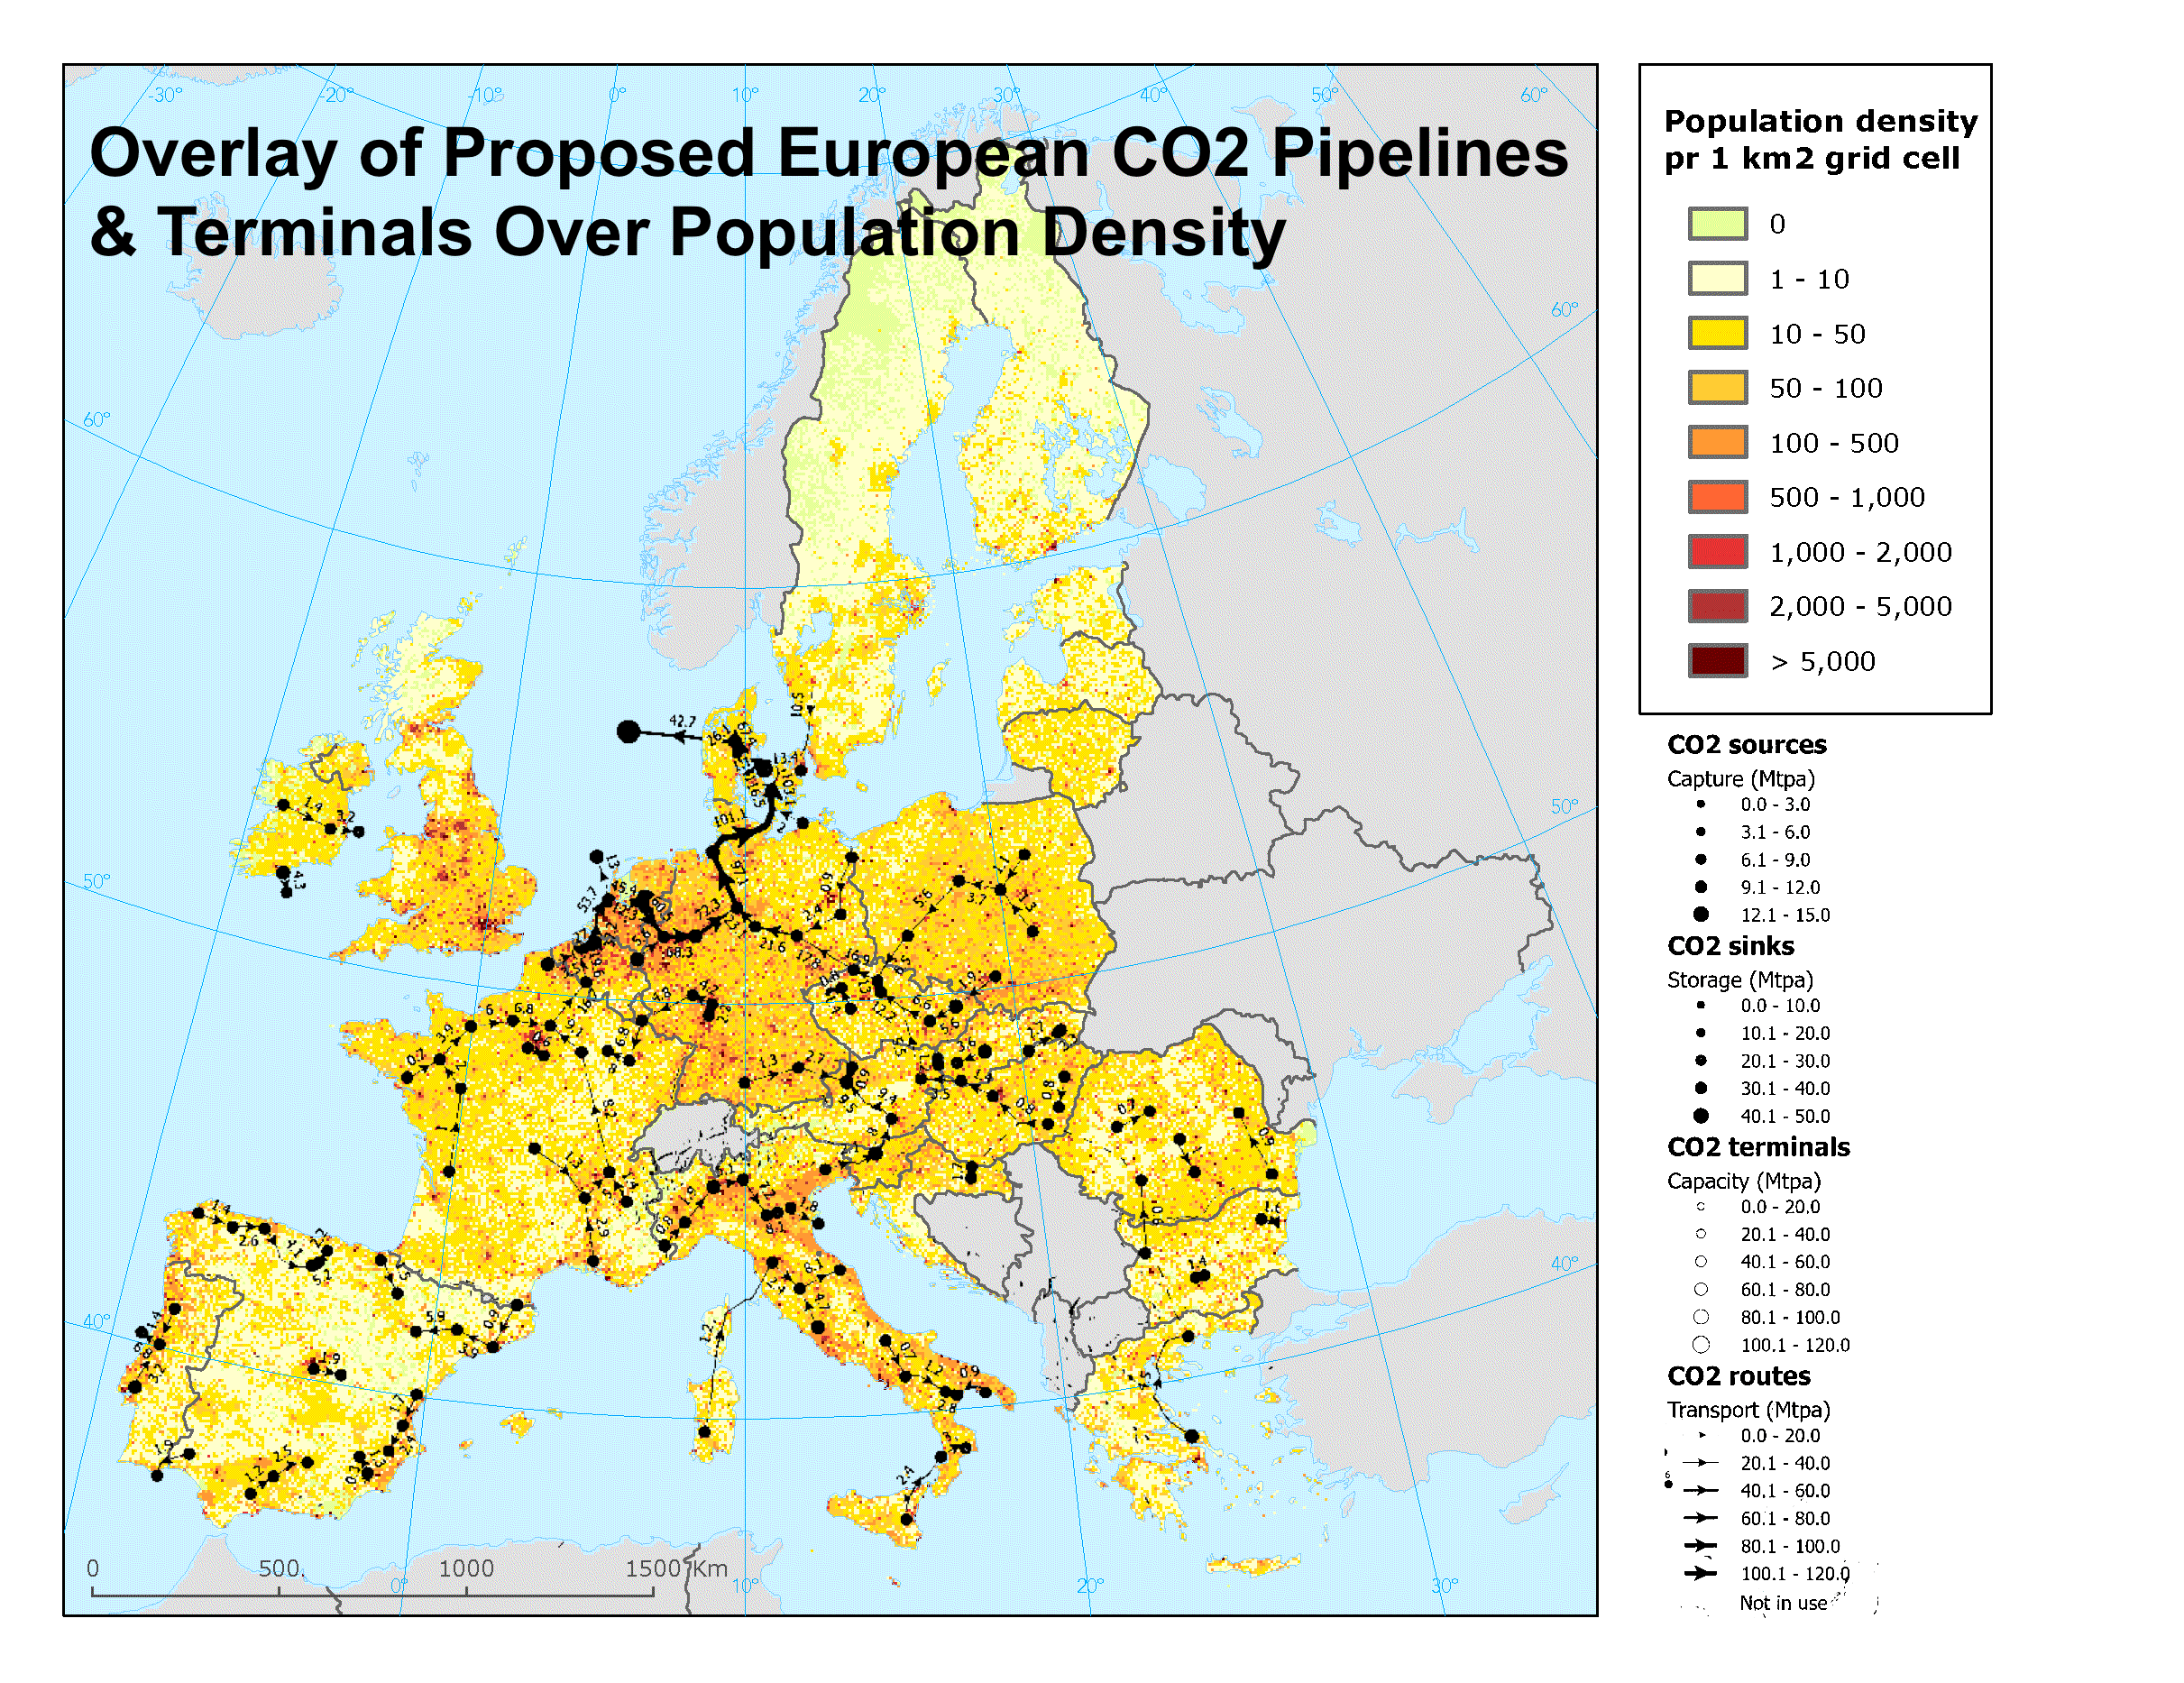 Önerilen Avrupa CO2 boru hatları ve terminallerinin yazar tarafından Avrupa nüfus yoğunluğu haritası üzerine yerleştirilmesi